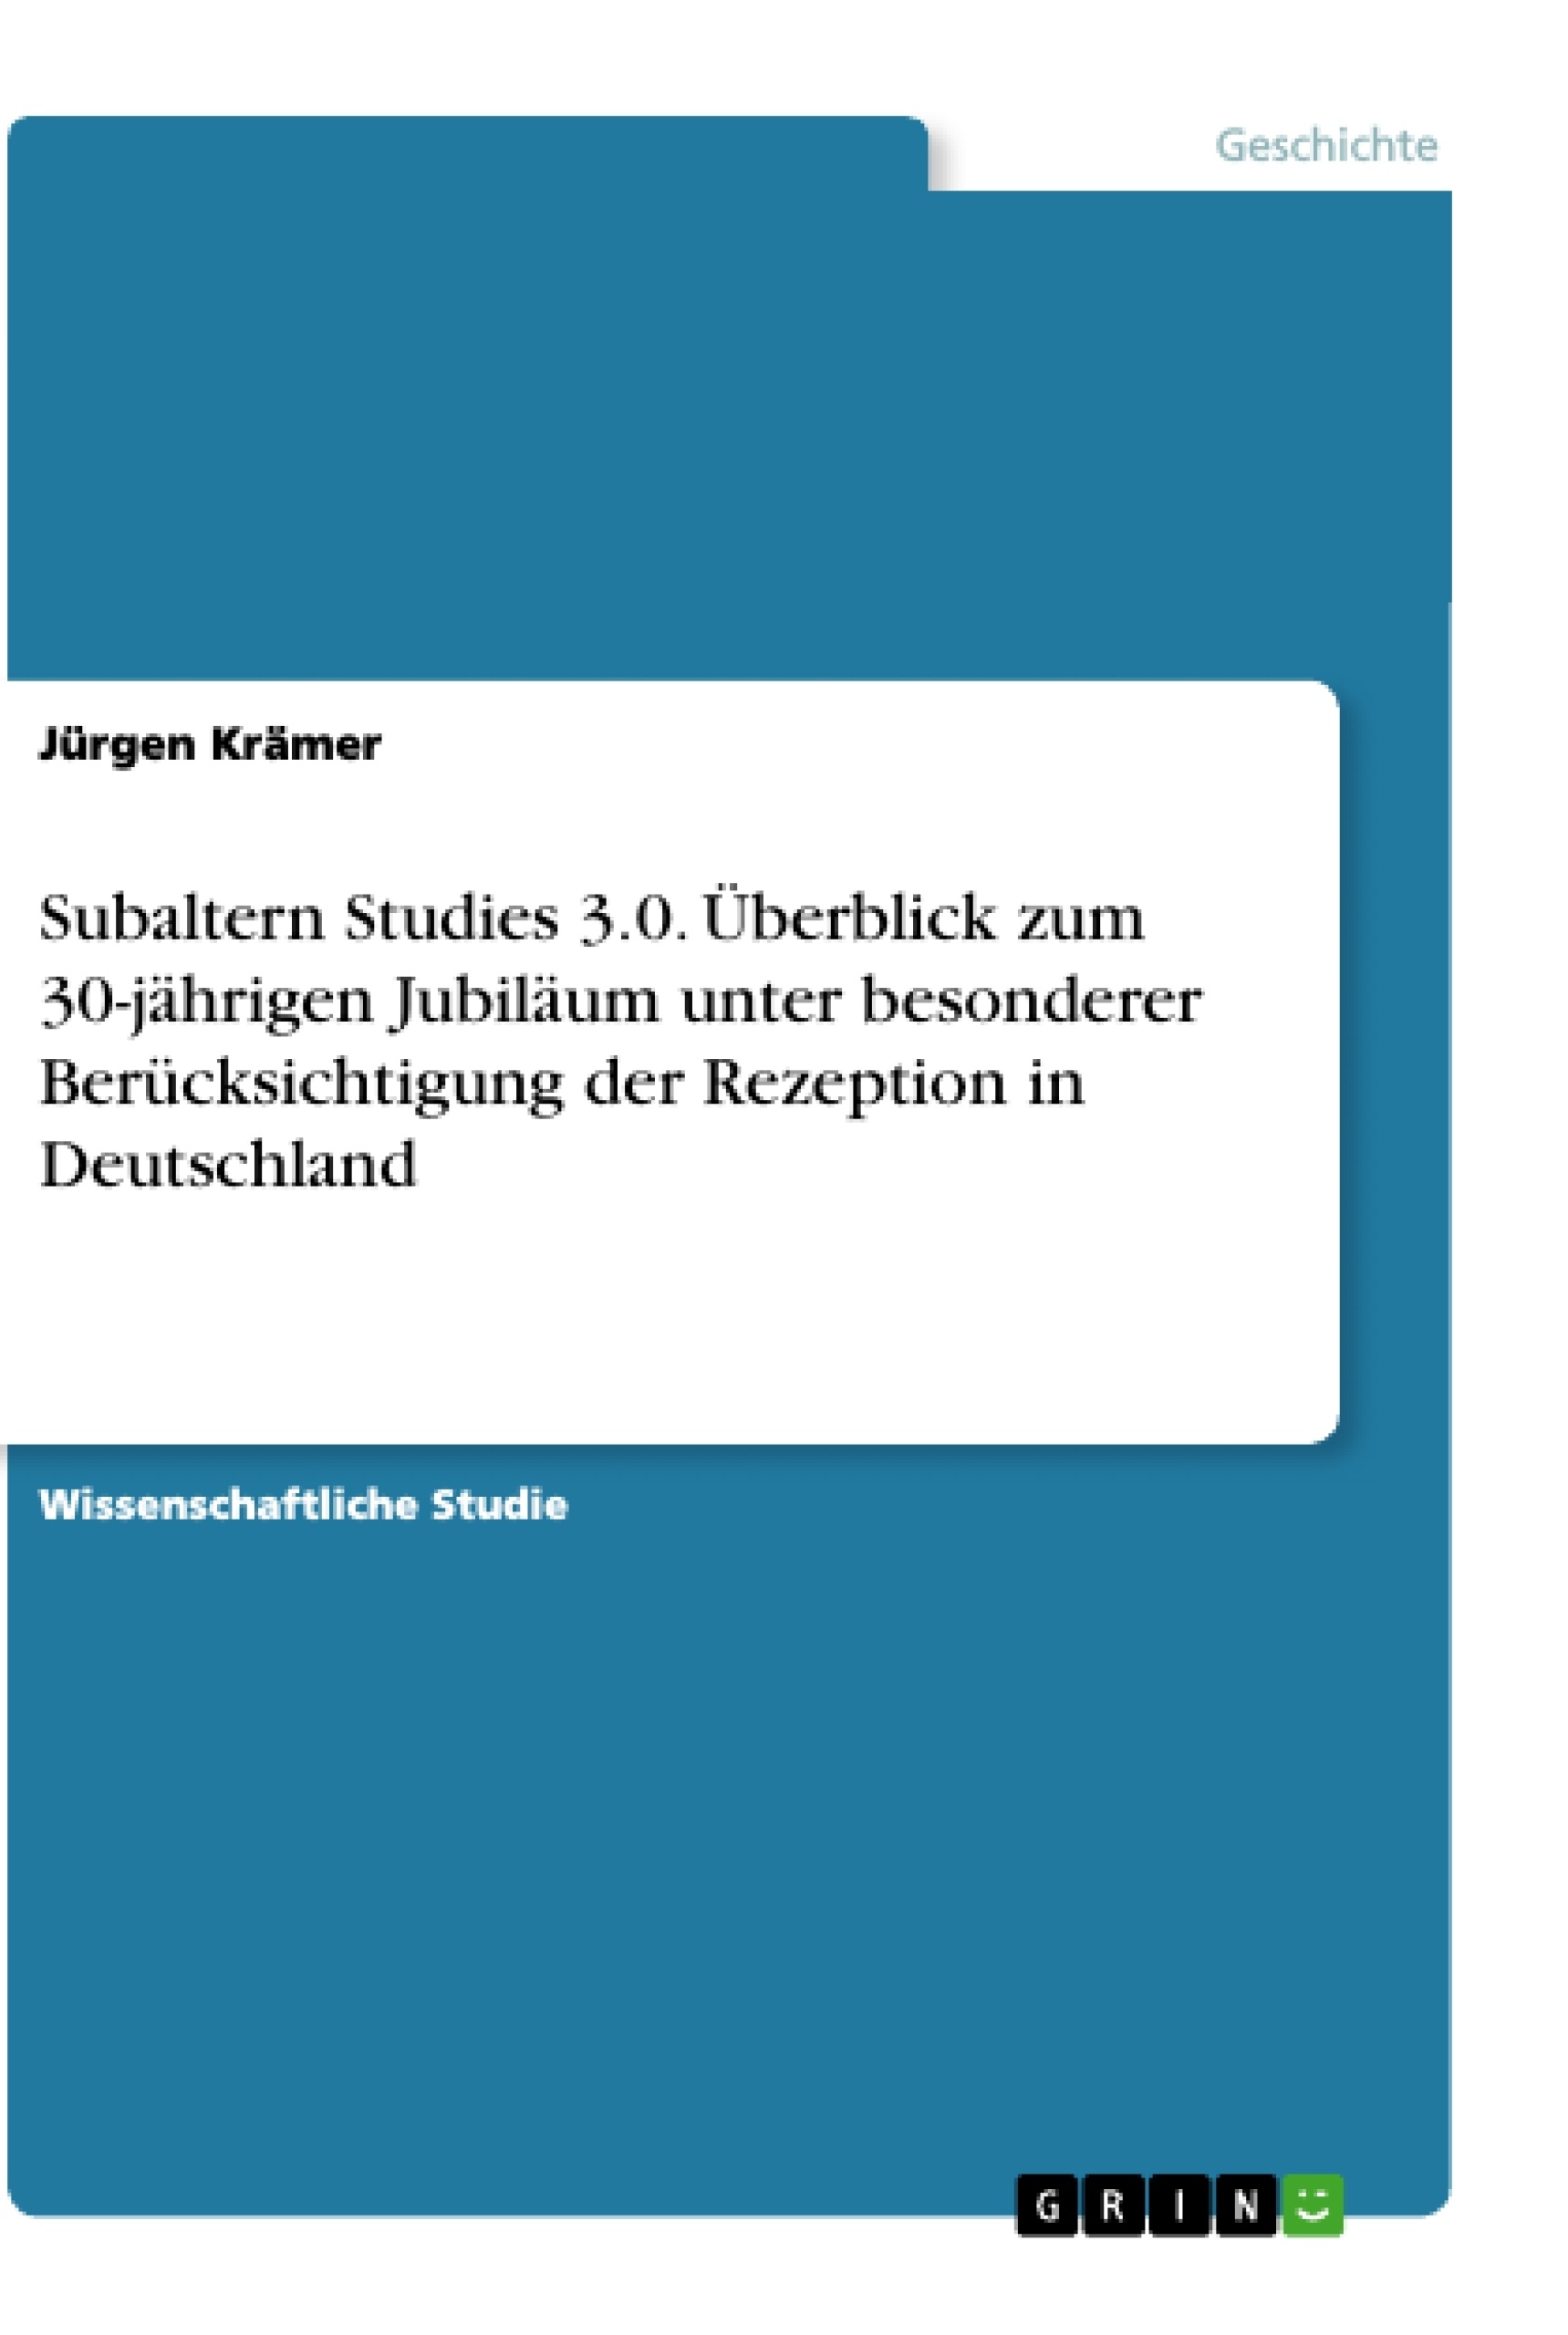 Title: Subaltern Studies 3.0. Überblick zum 30-jährigen Jubiläum unter besonderer Berücksichtigung der Rezeption in Deutschland